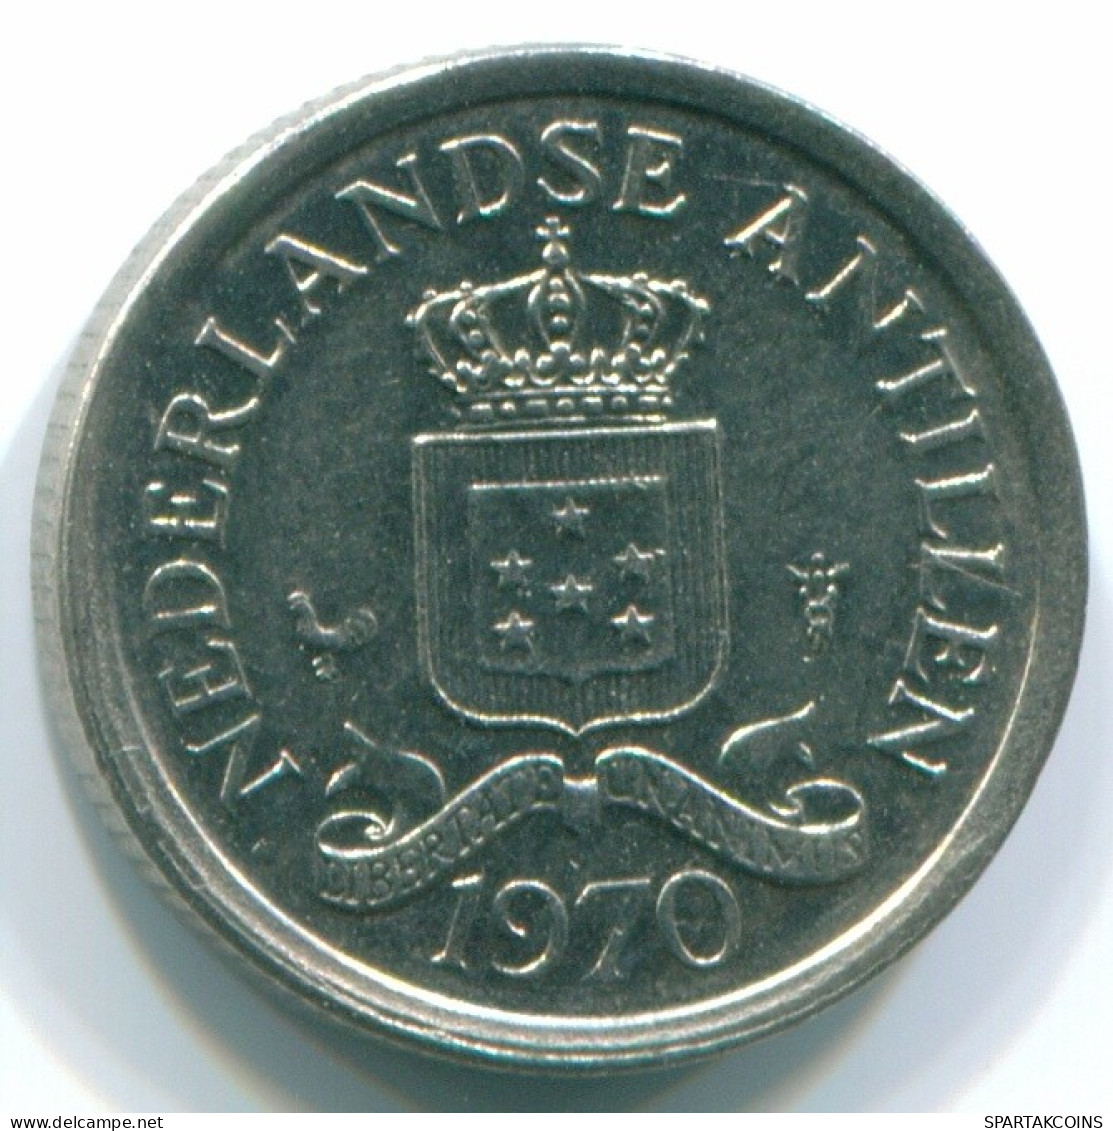 10 CENTS 1970 NIEDERLÄNDISCHE ANTILLEN Nickel Koloniale Münze #S13333.D.A - Antille Olandesi